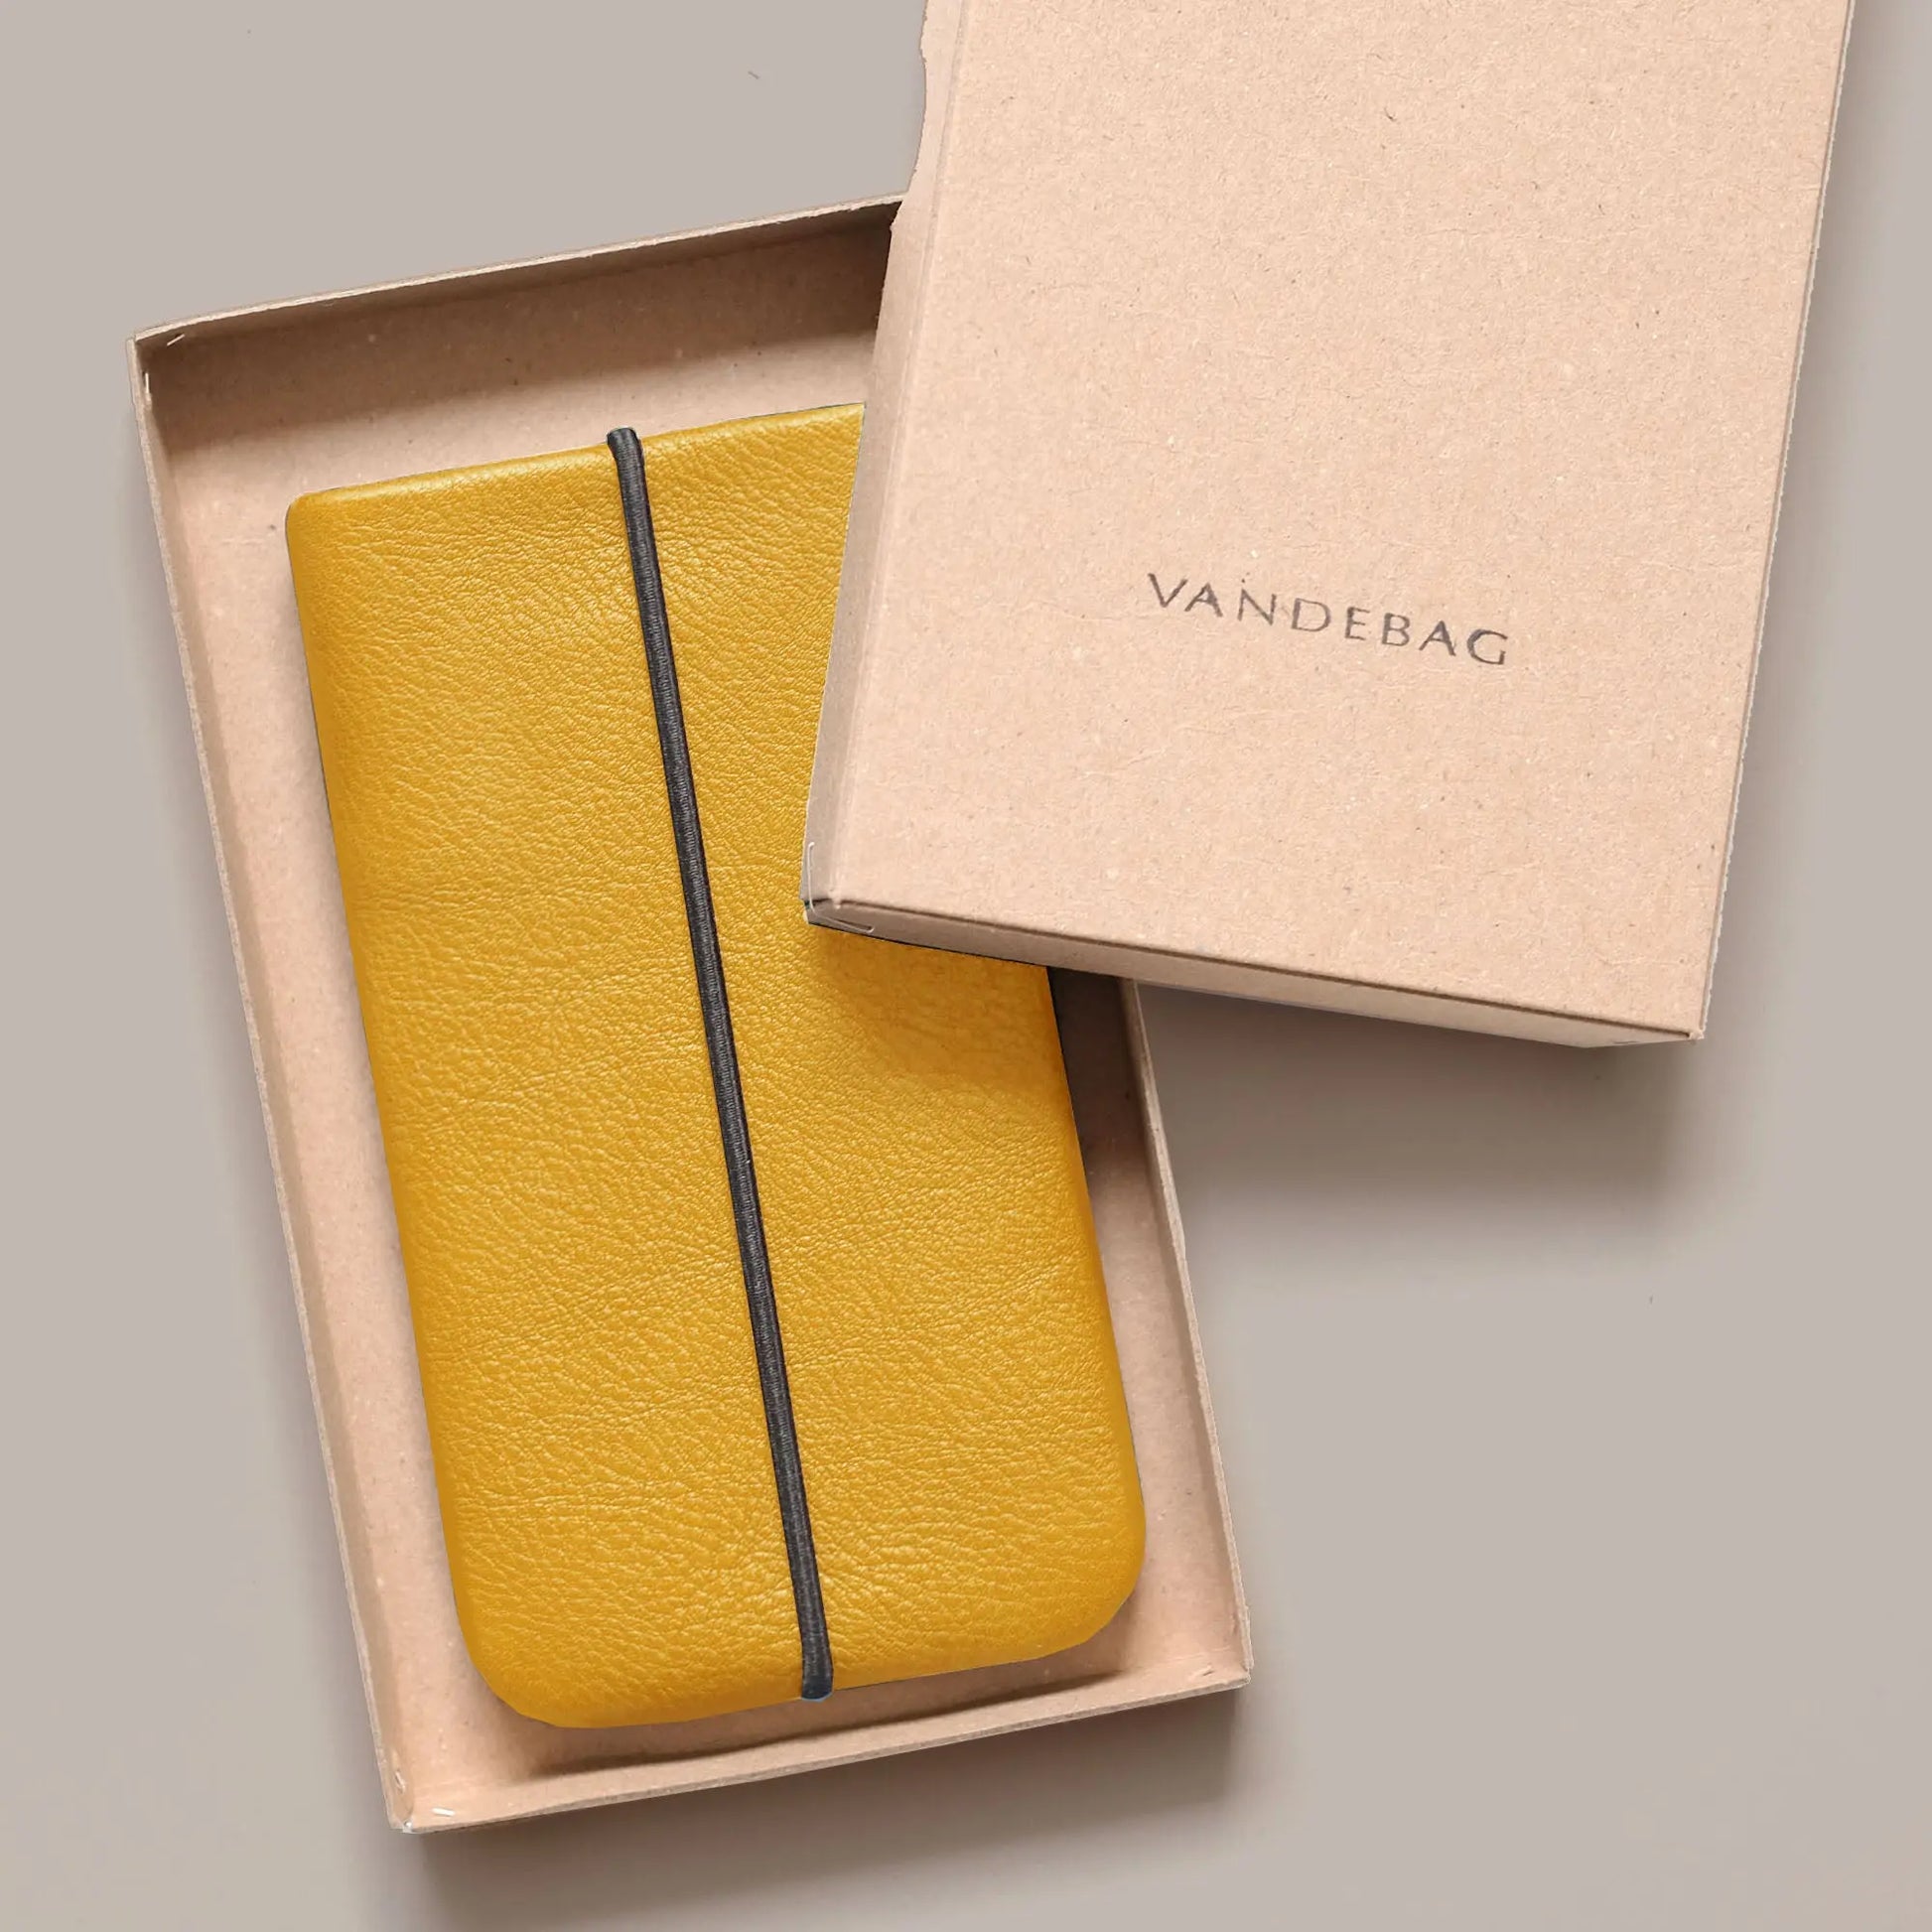 iPhonehülle aus gelbem Leder liegt in einer Produktbox aus Karton mit der Aufschrift Vandebag